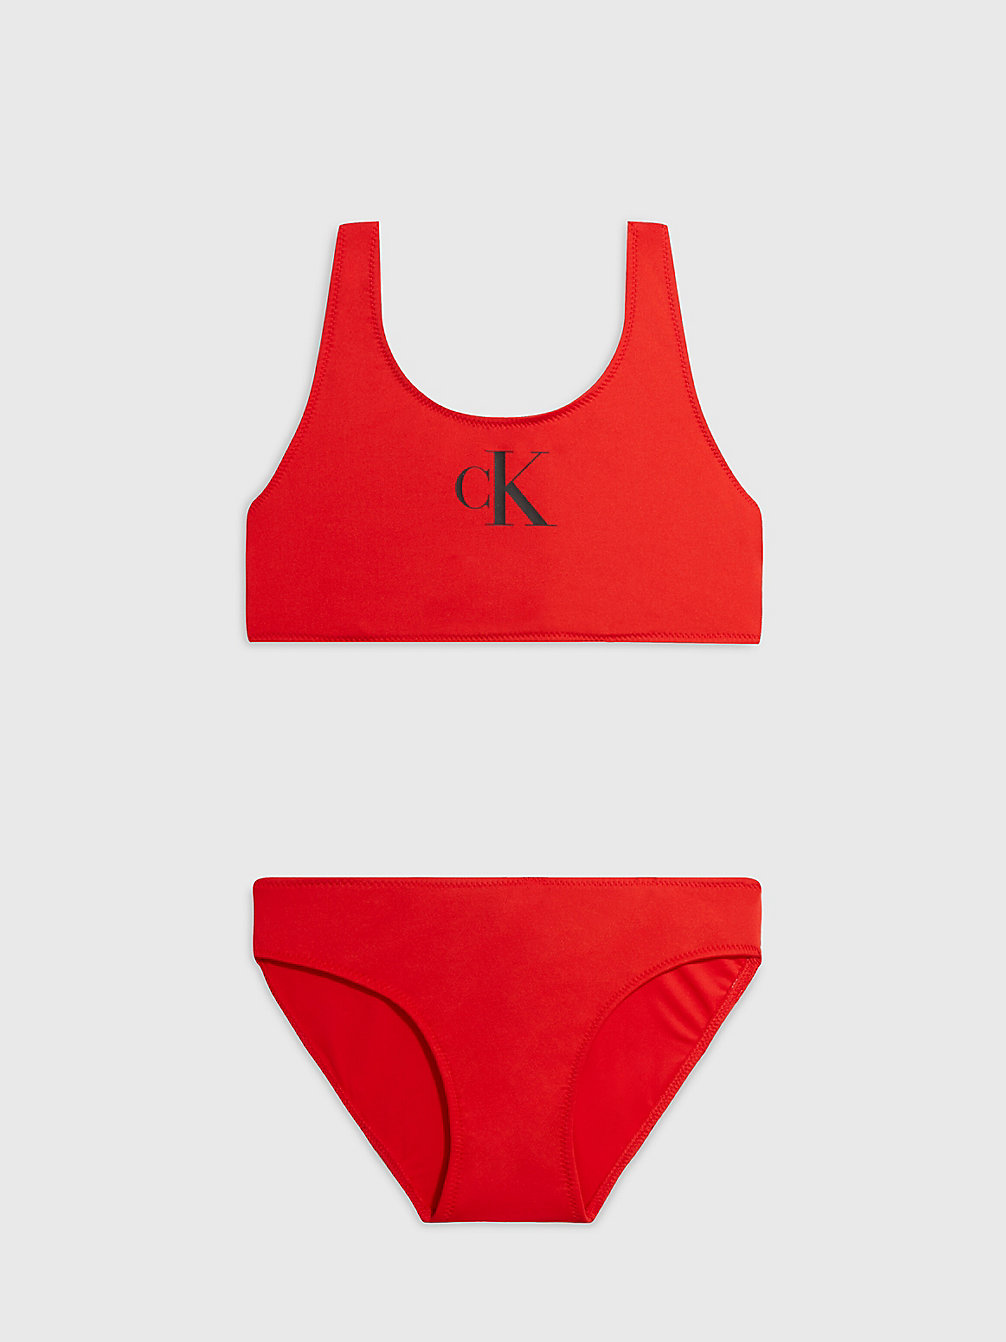 CAJUN RED > Dziewczęcy Zestaw Bikini Z Braletką - CK Monogram > undefined girls - Calvin Klein